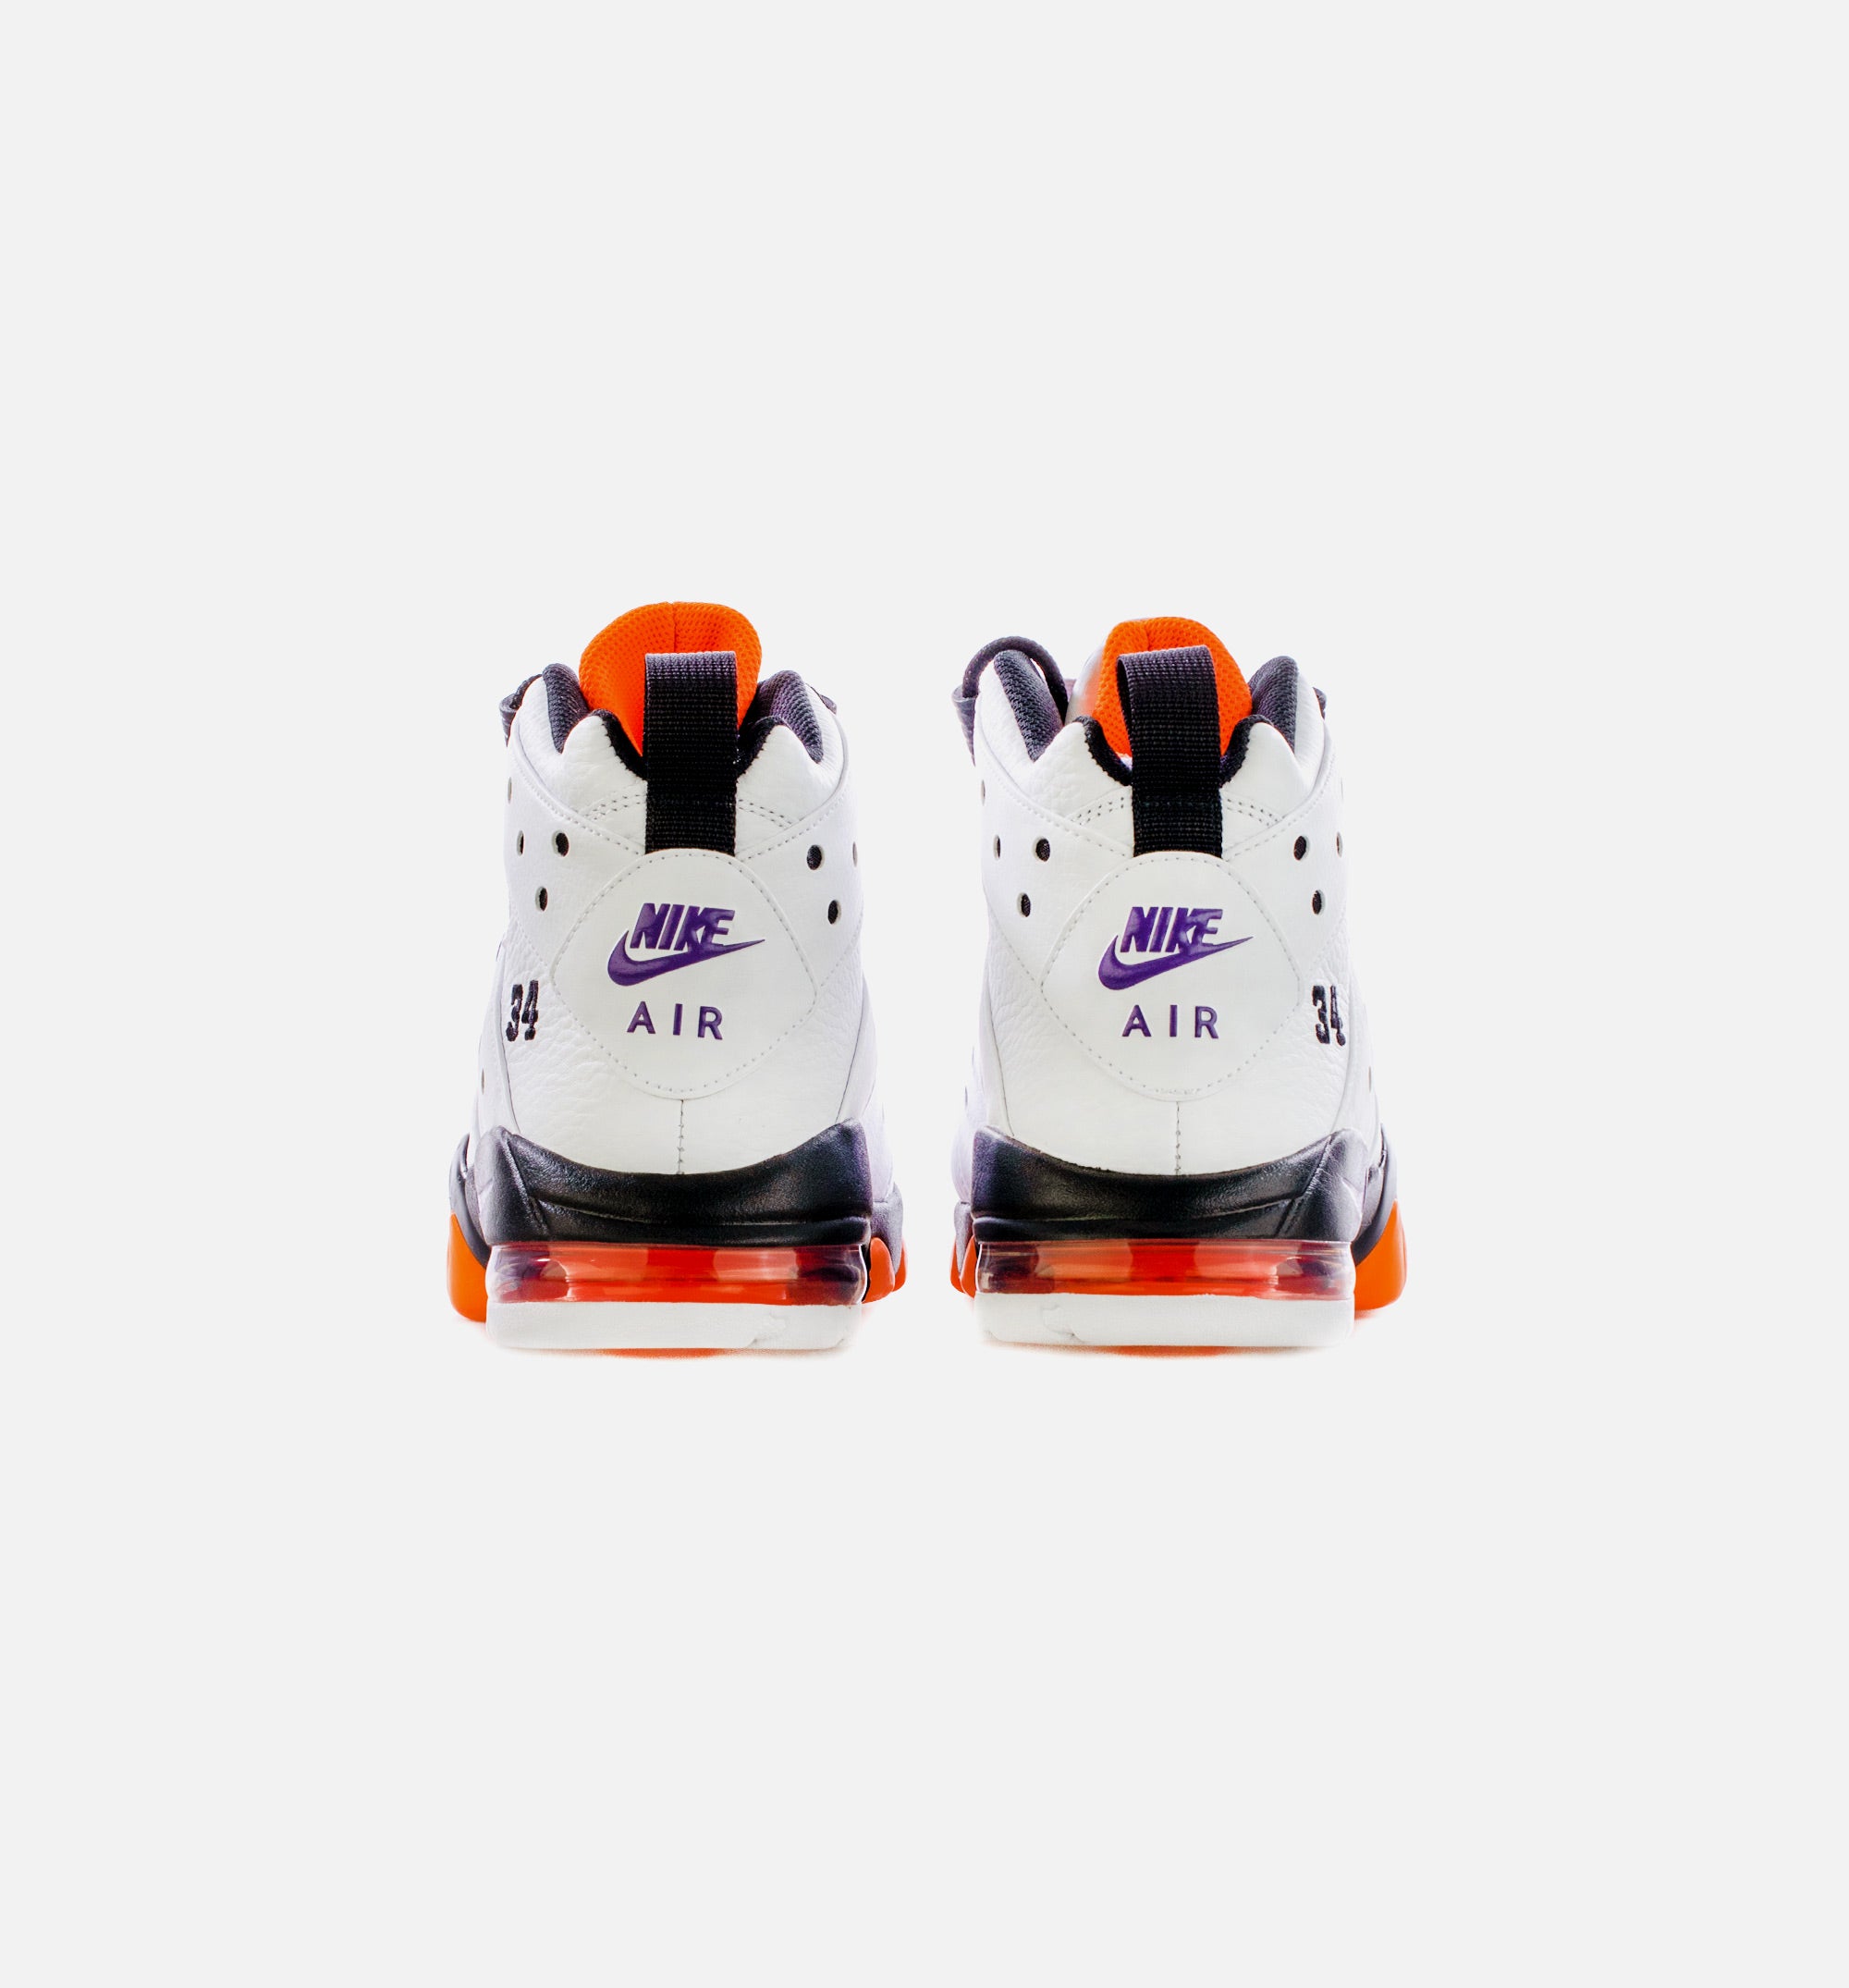 Nike Air Max 2 CB '94 Suns Size 9.5 Purple Orange White DO5880-100 Cb34  BARKLEY